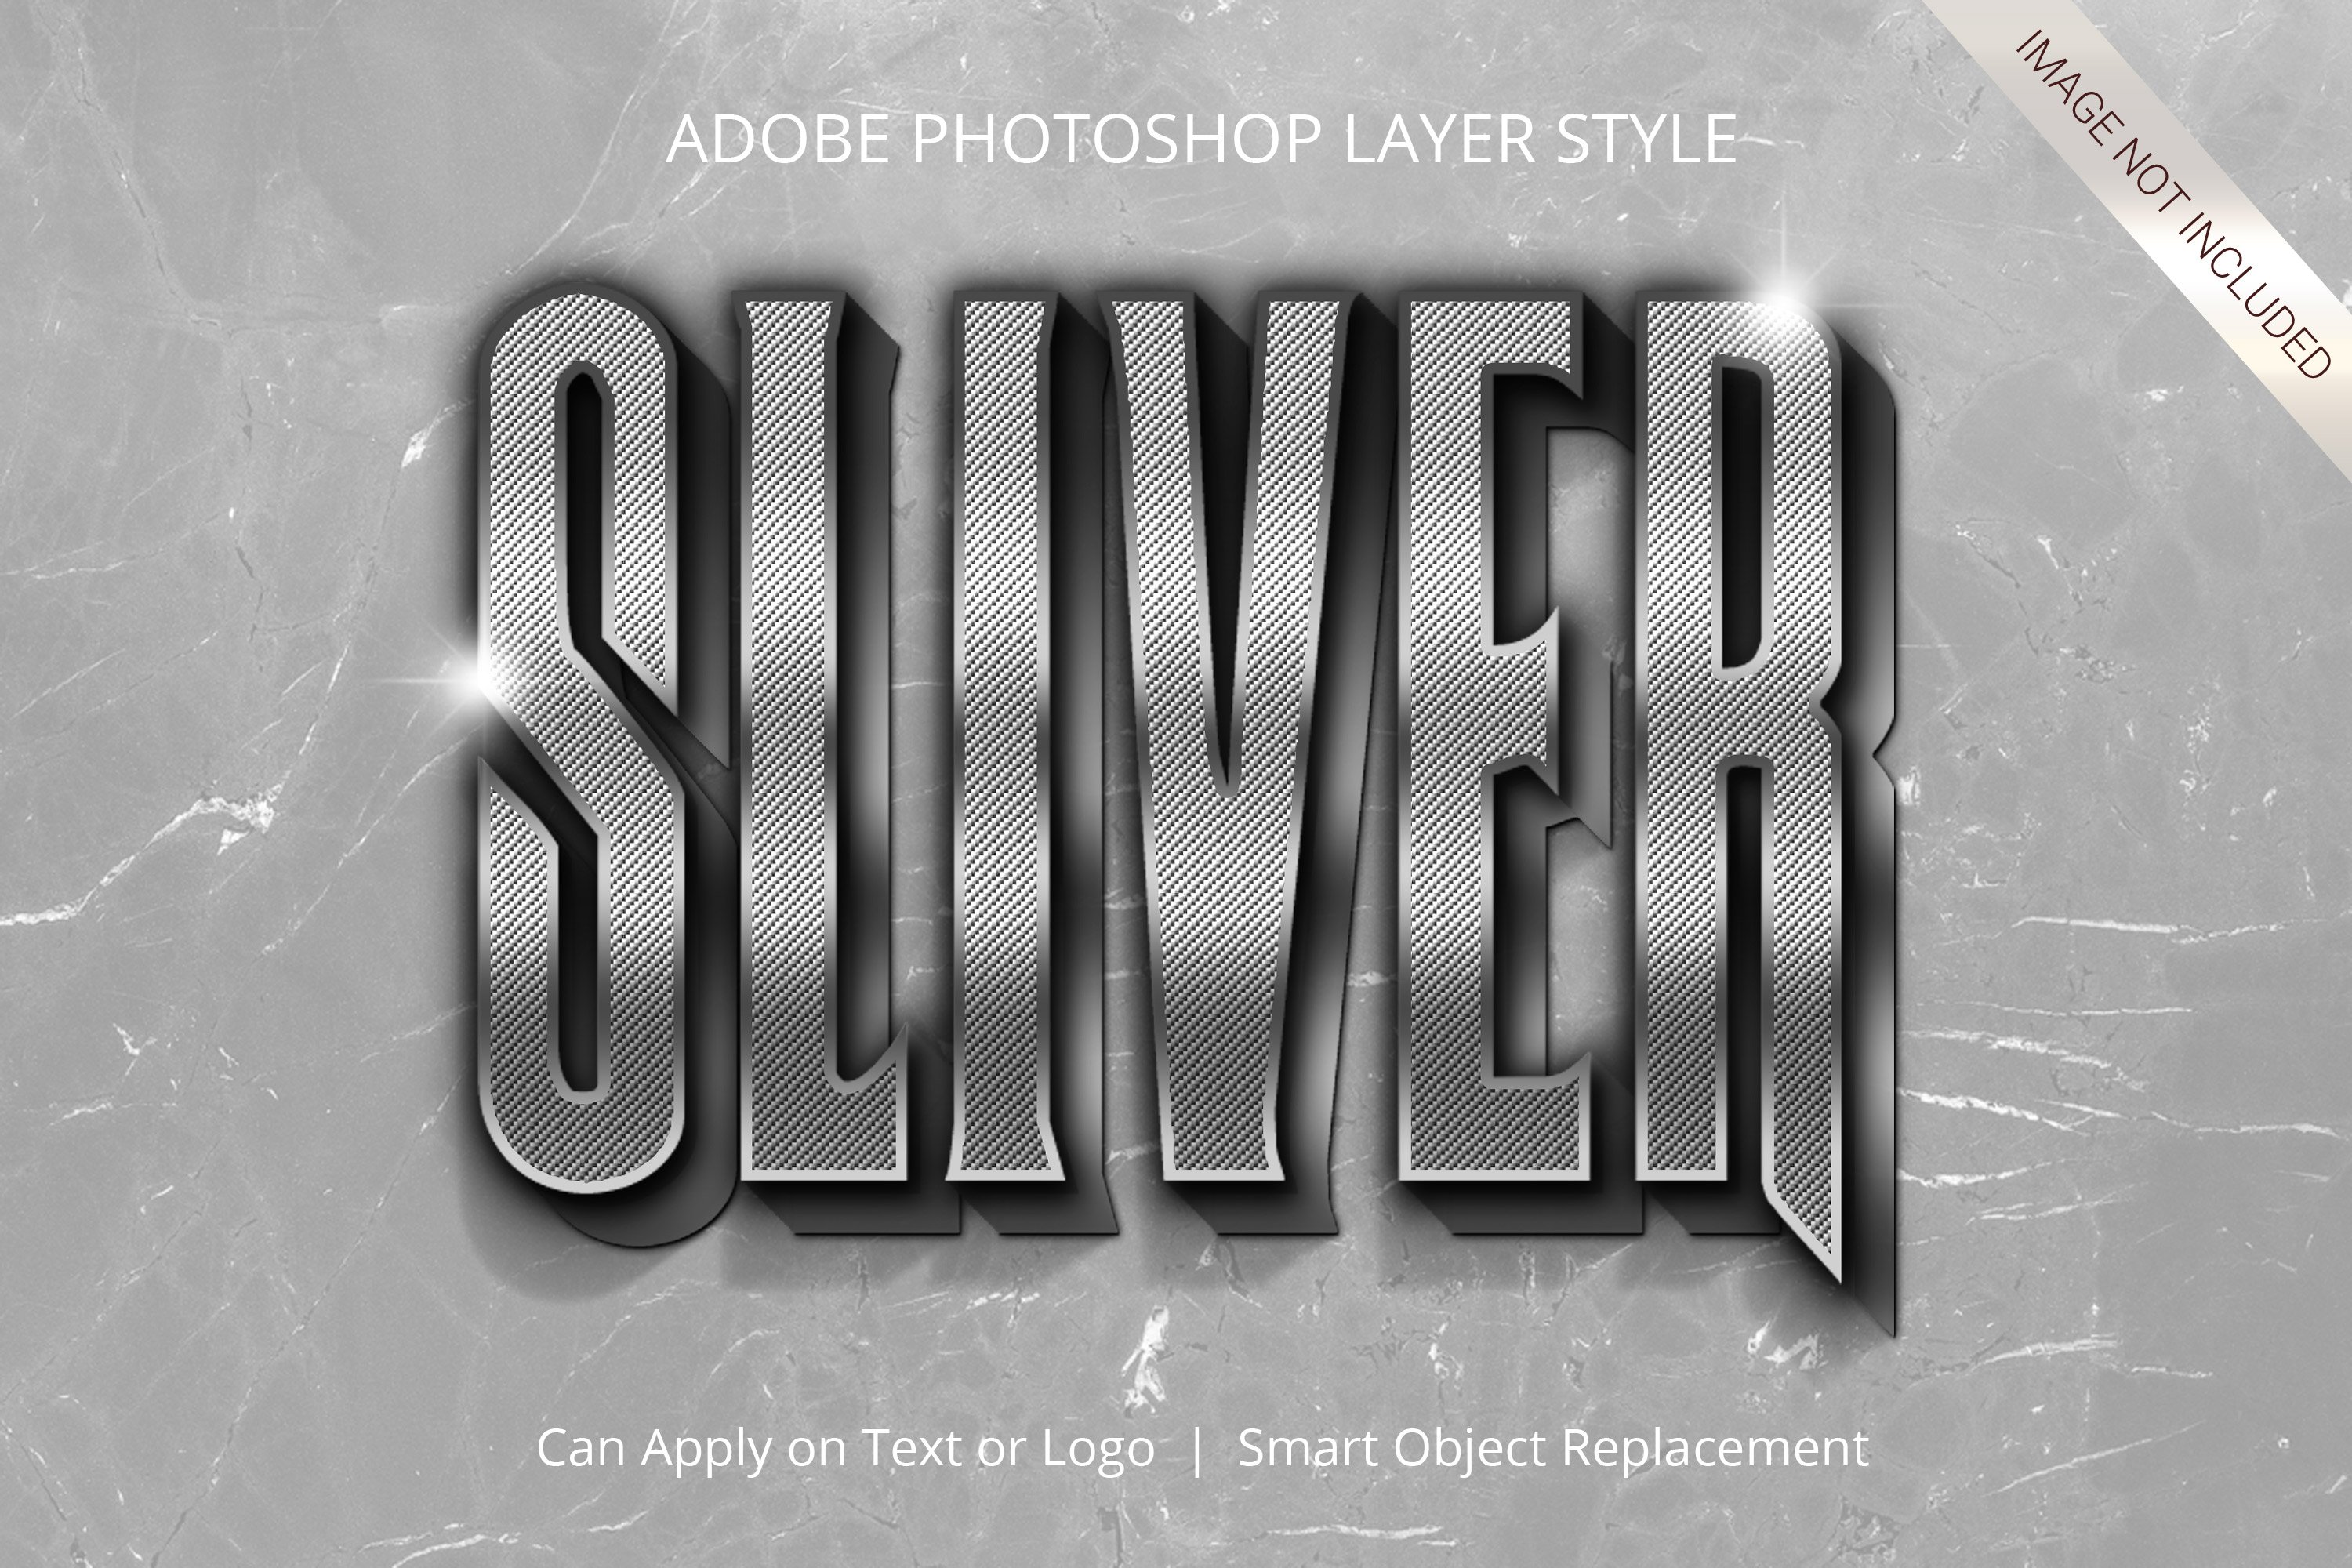 adobe photoshop text style chrome metallic 800